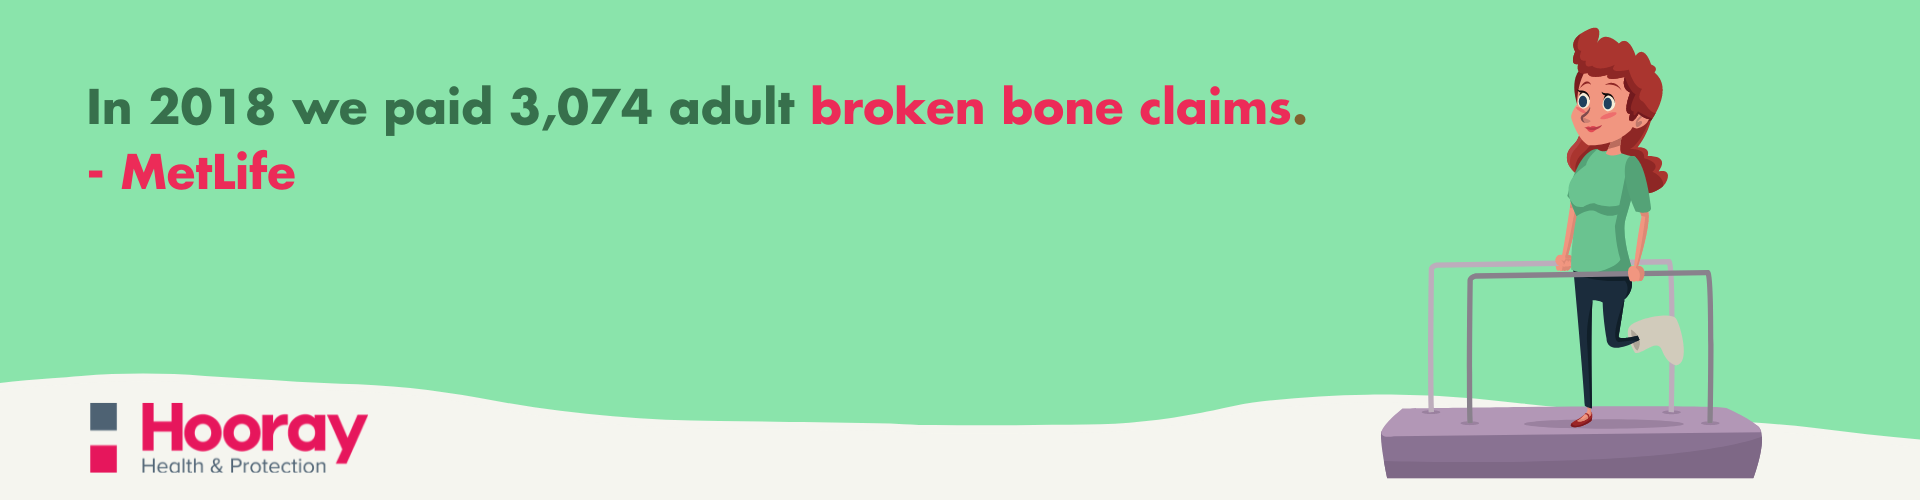 Accident Insurance Broken Bones